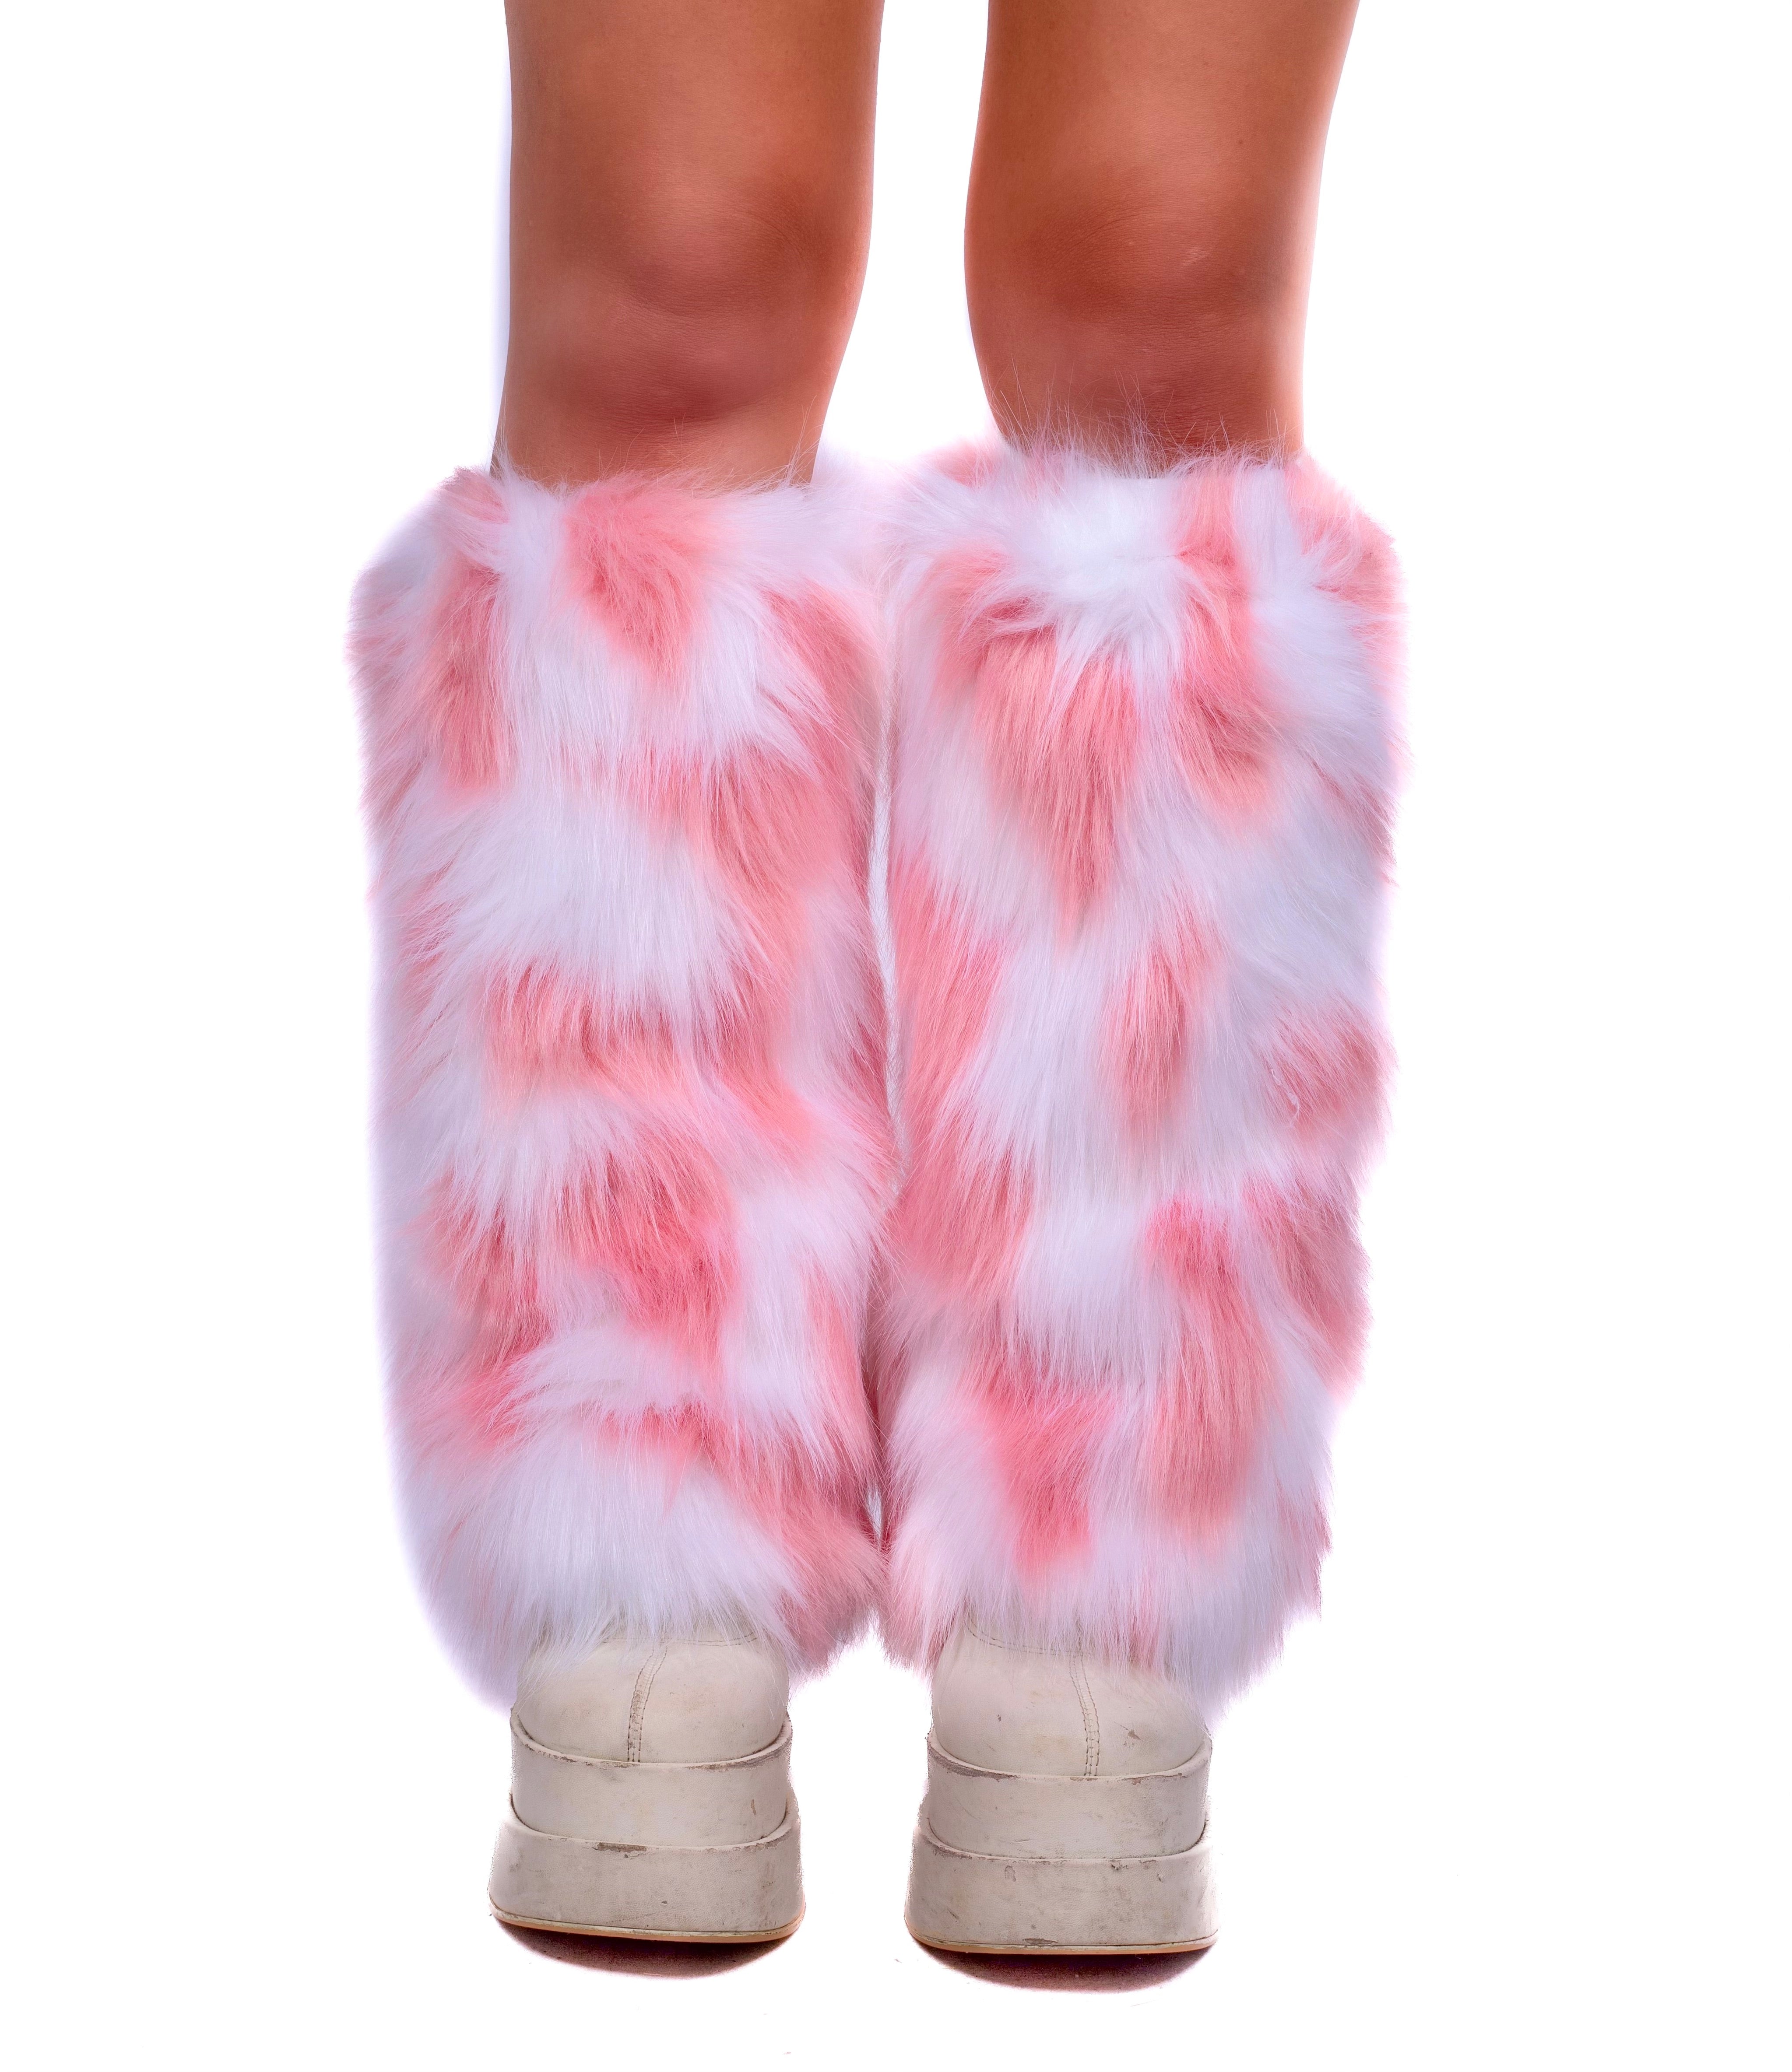 Pink/ White Fuzzy Leg Warmers